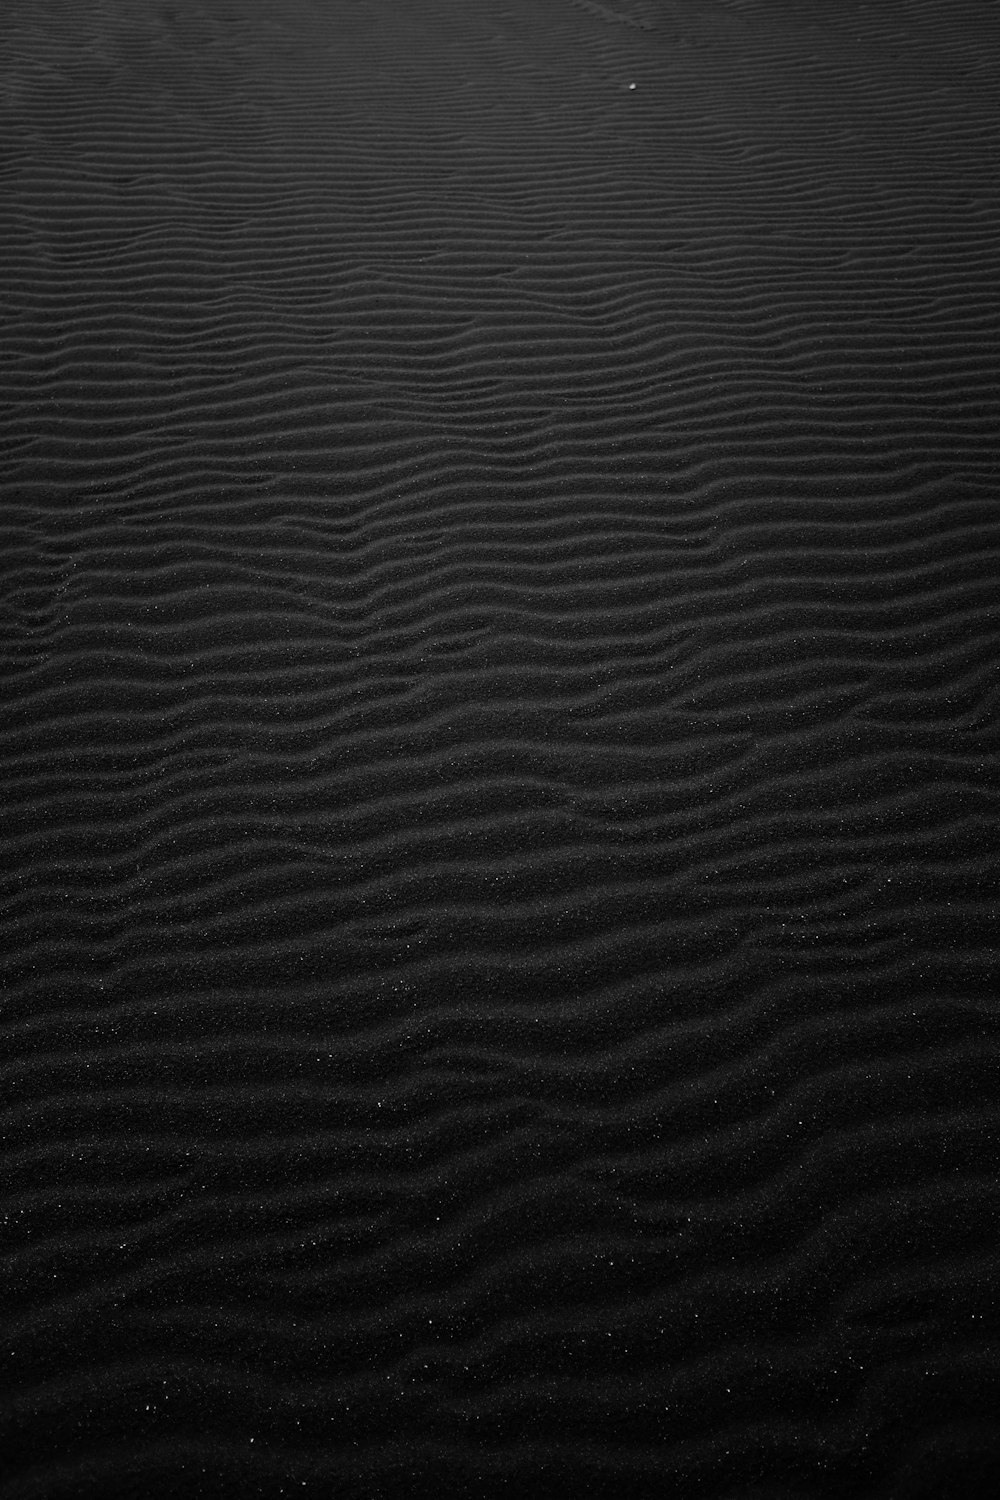 fotografia in scala di grigi della sabbia